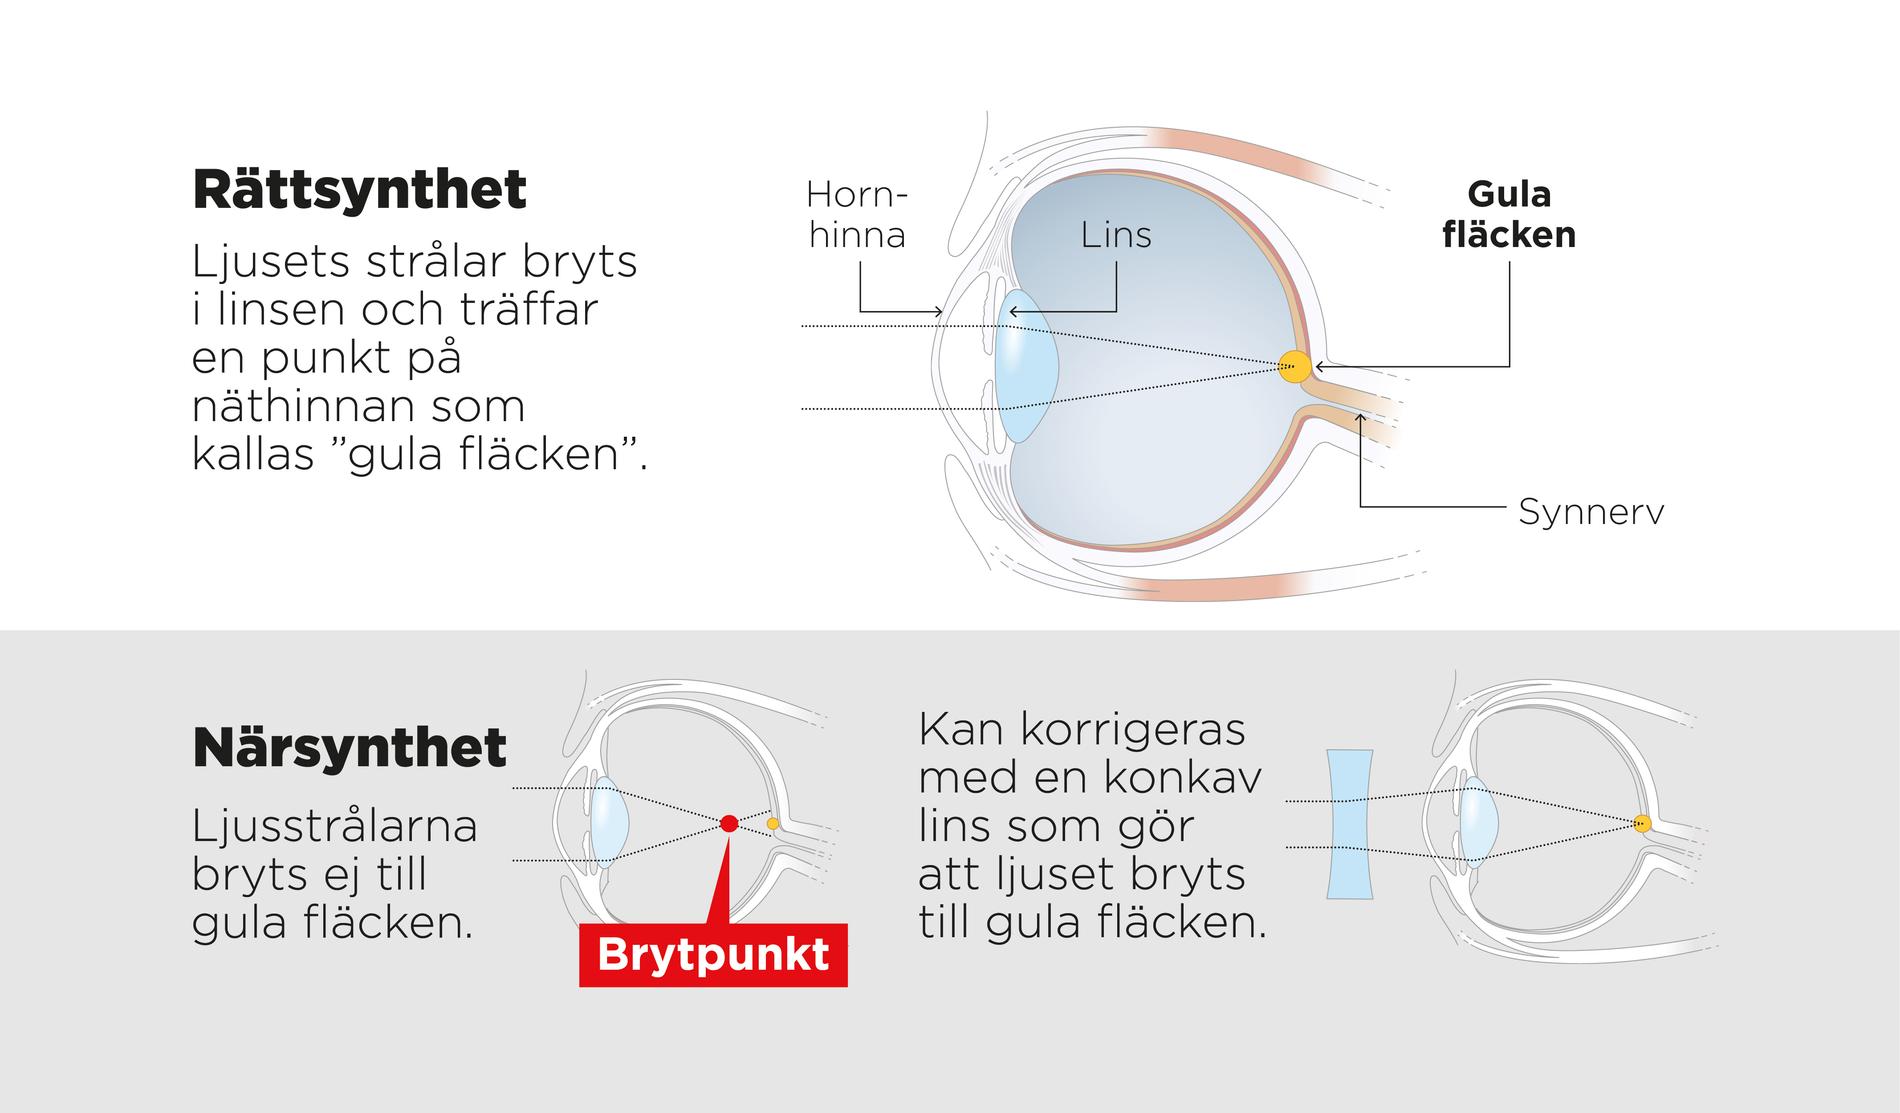 Ett närsynt öga har växt vilket ökar risken för synskador.